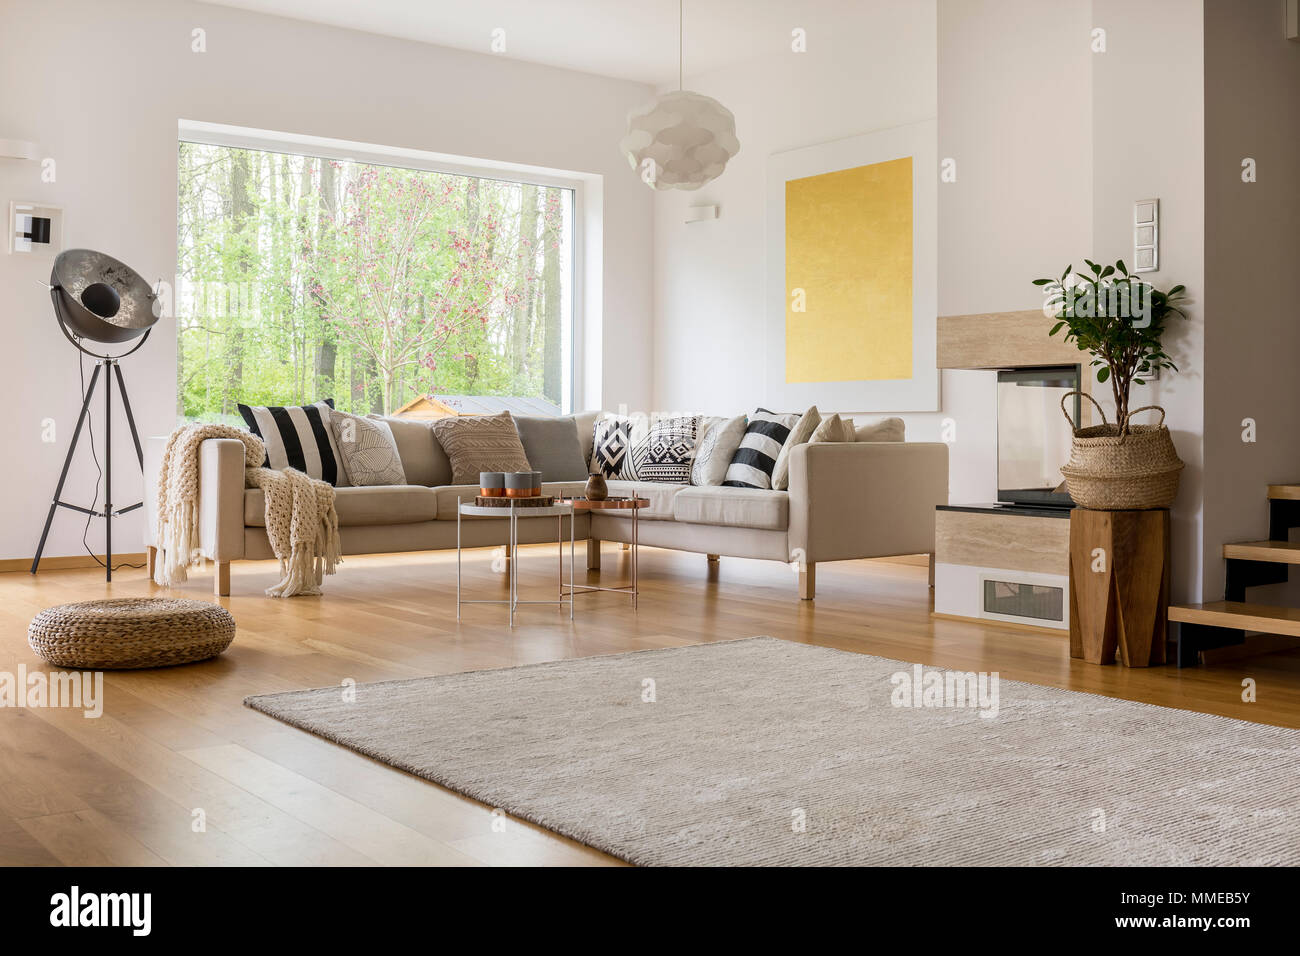 Ouvrir l'espace dans cet appartement à la décoration moderne canapé blanc Banque D'Images